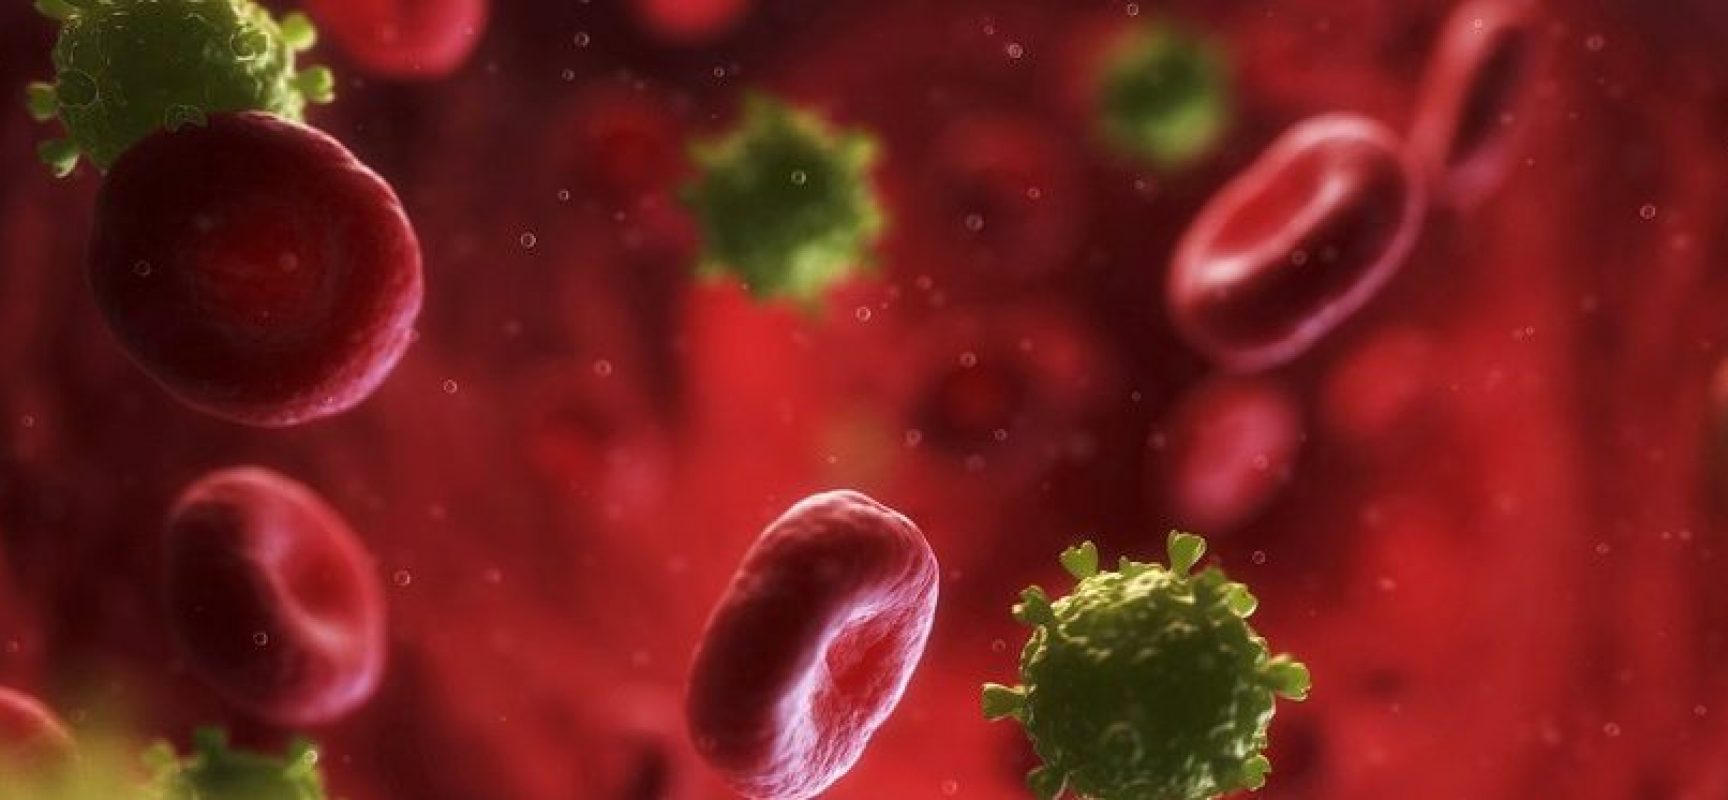 Saúde lança campanha para conter avanço do HIV entre homens jovens